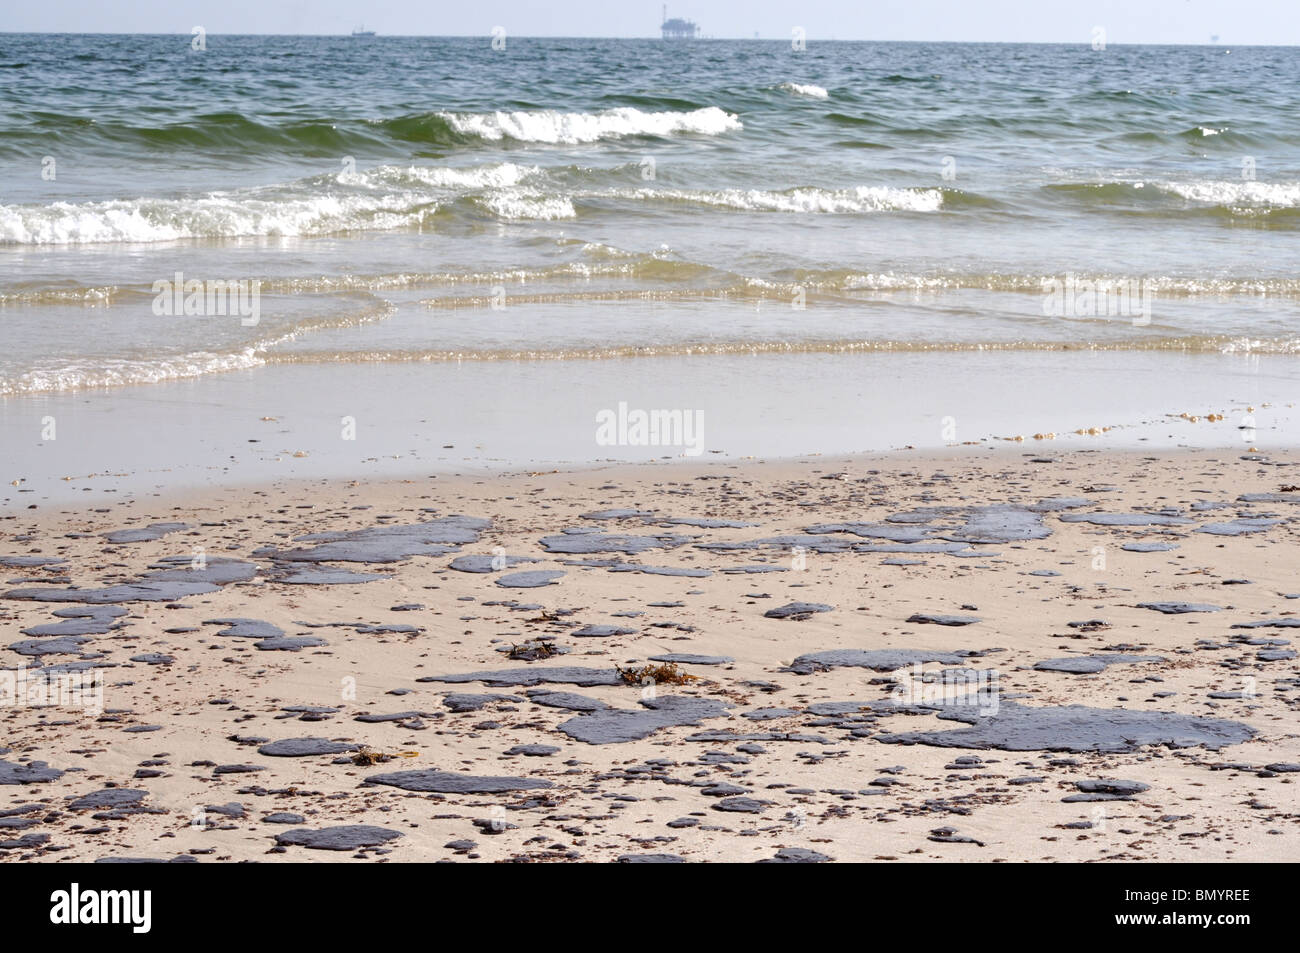 Fuoriuscita di olio sulla spiaggia con off shore oil rig in background. Foto Stock